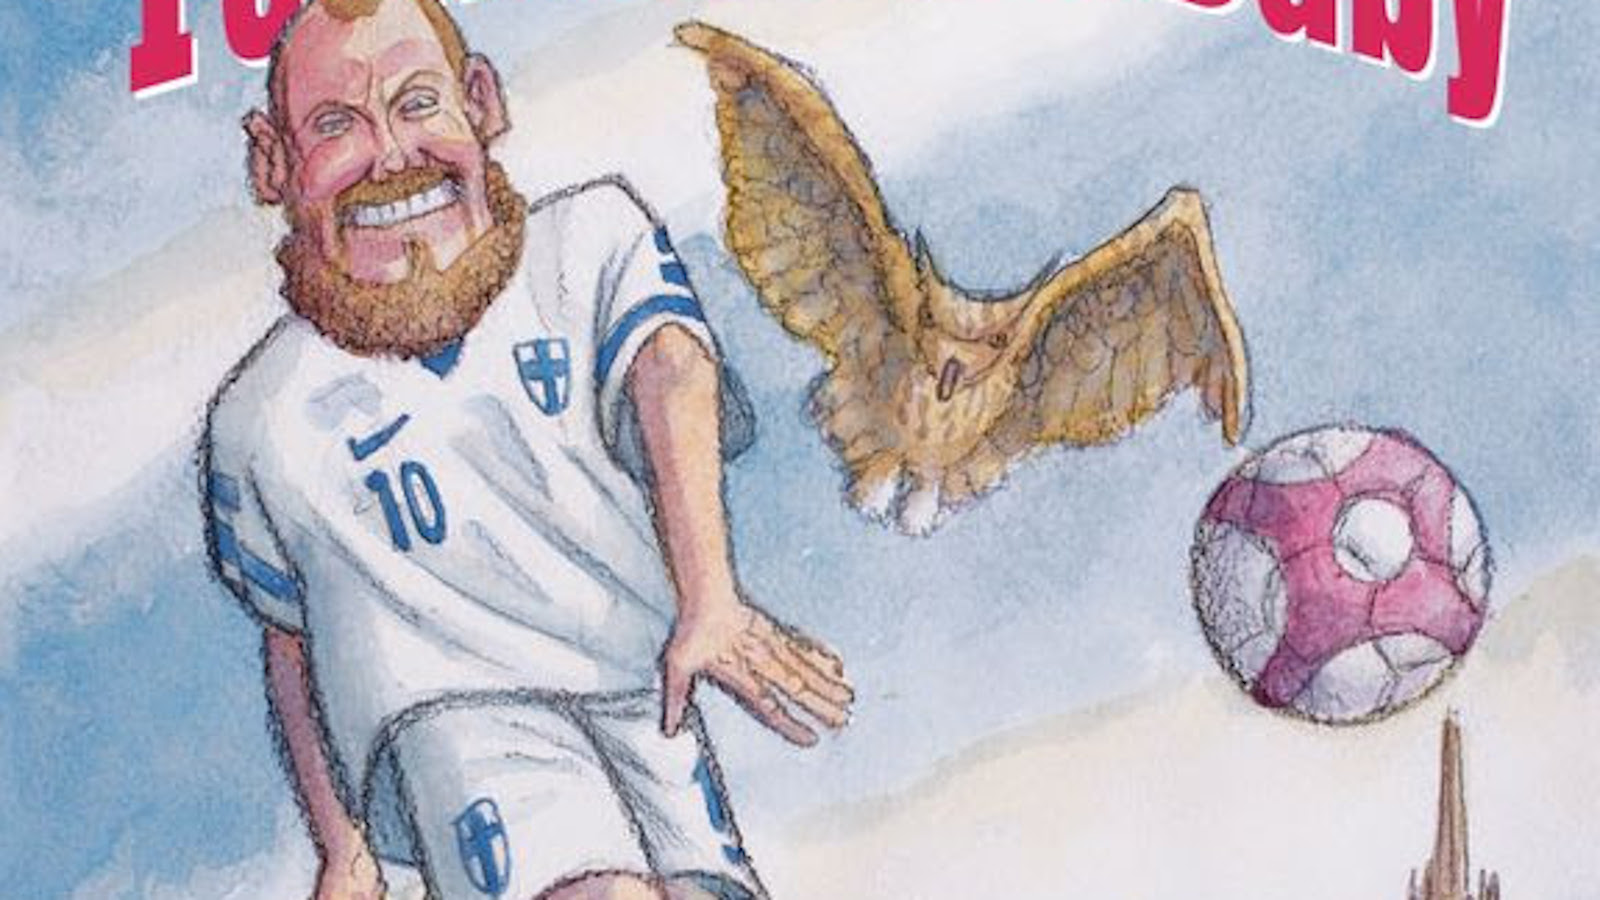 Kuvassa on piirroskuva Teemu Pukista, jolla on valkoinen pienillä Suomen lipuilla ja numerolla 10 varustettu jalkapalloasu päällään. Vieressä lentää haukka ja jalkapallo.